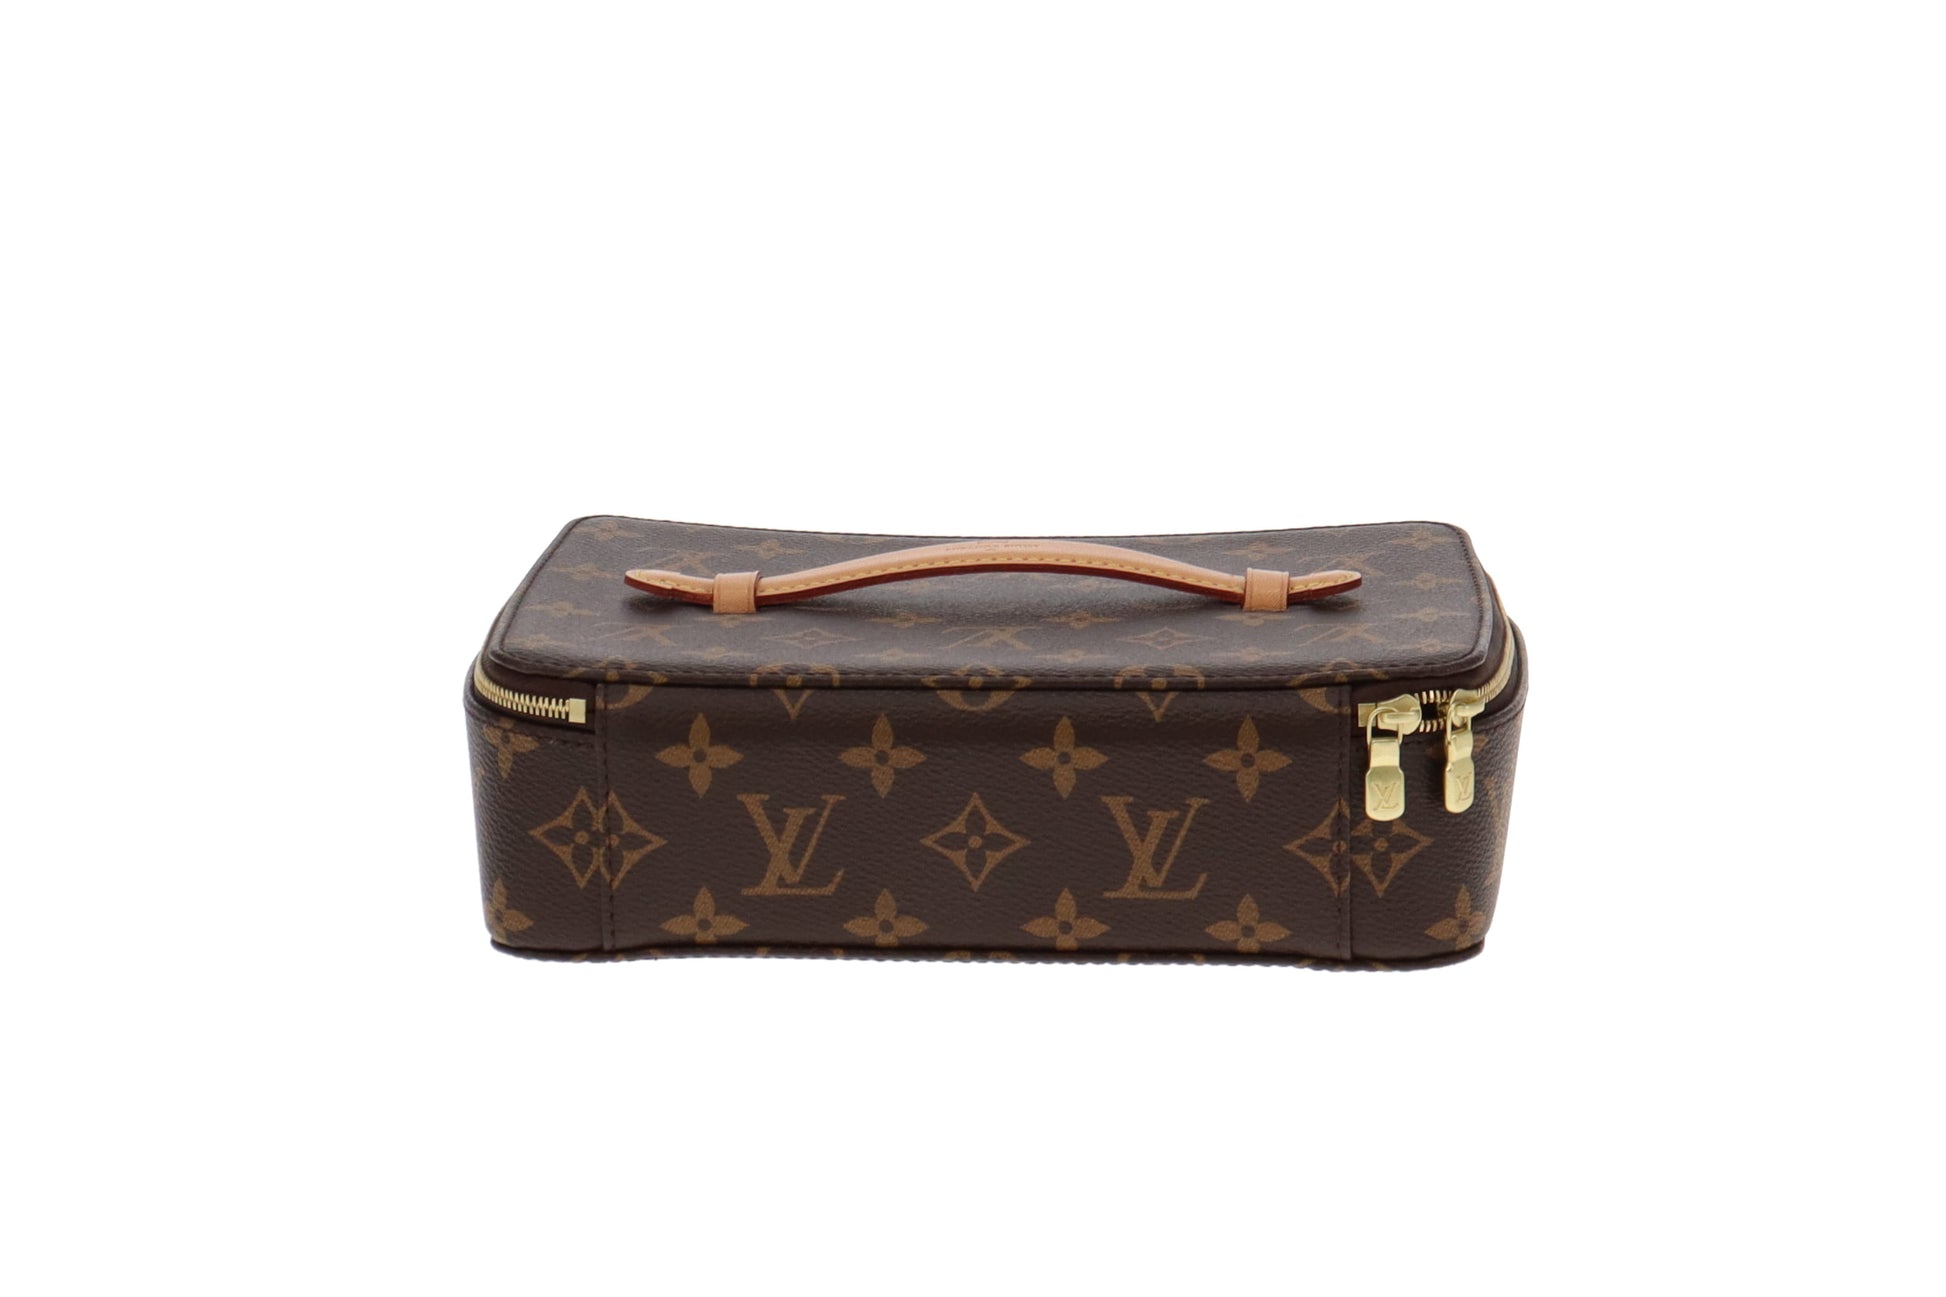 Louis Vuitton Handbag in Matte Burgundy Empreinte Monogram Leather and